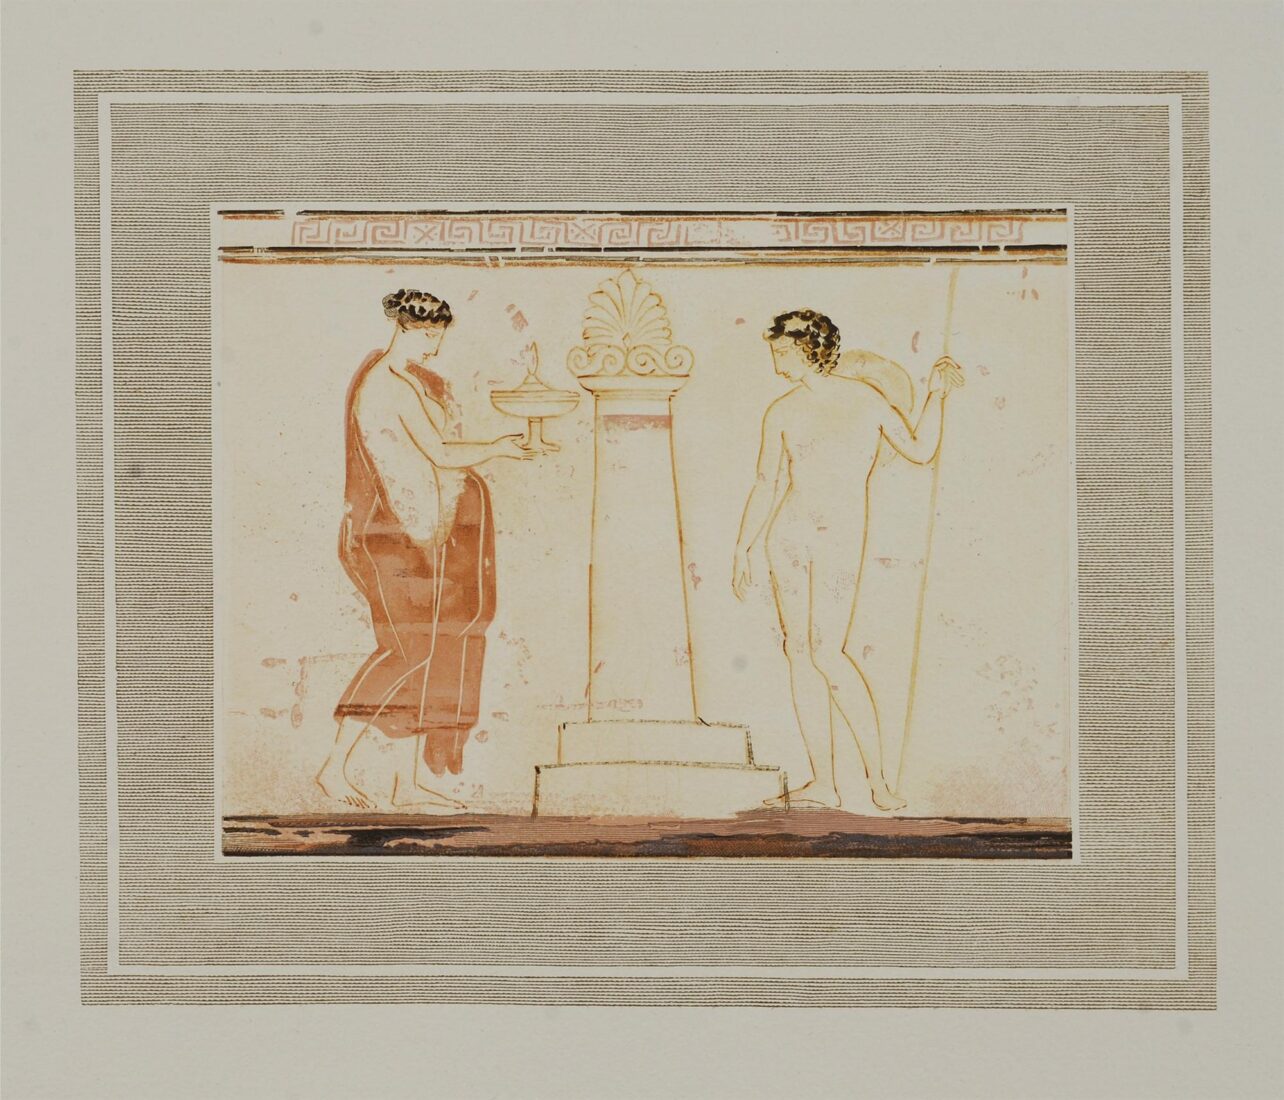 Λευκή λήκυθος του Μουσείου Αθηνών - Κεφαλληνός Γιάννης